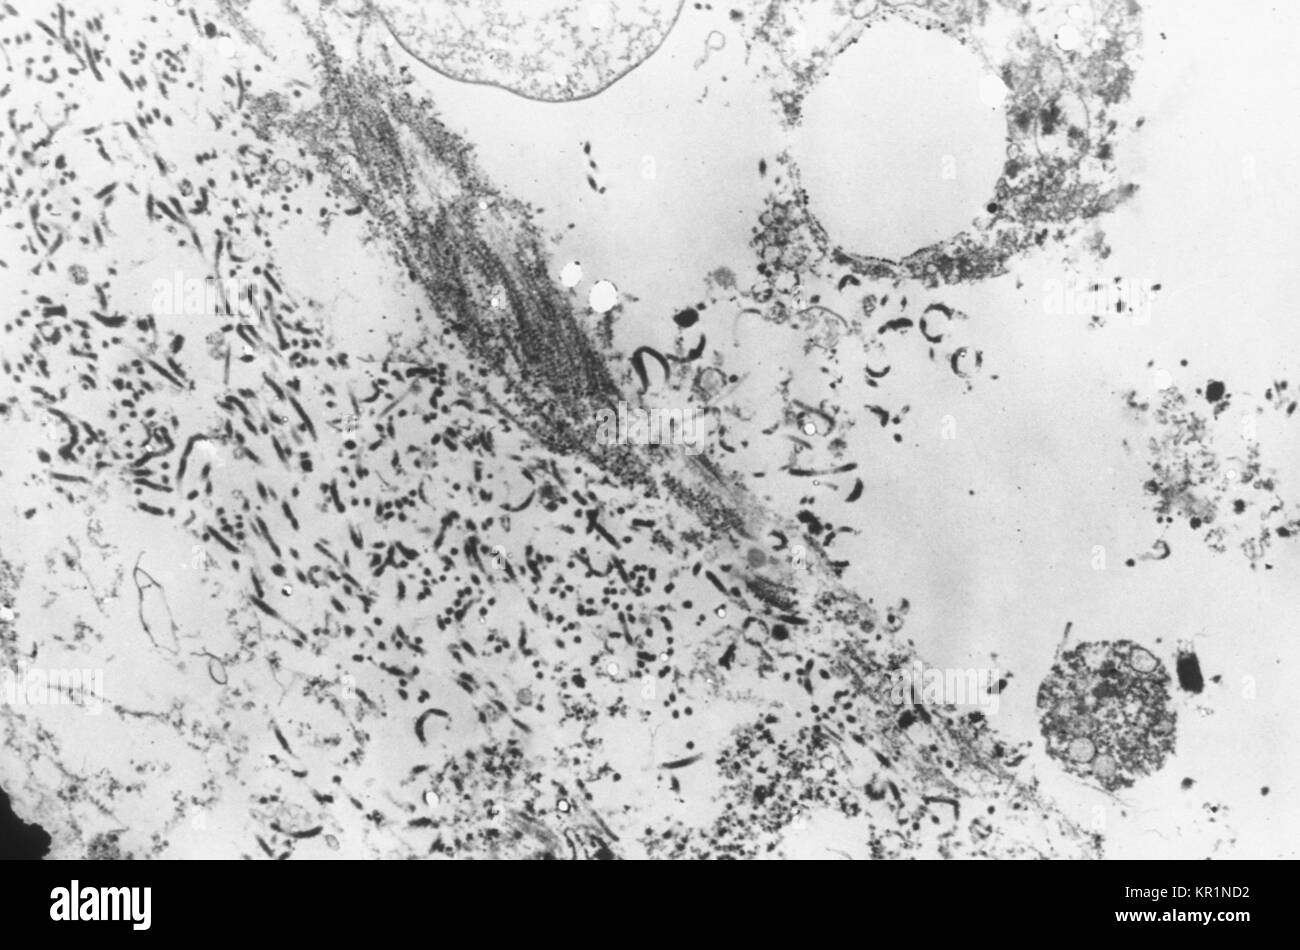 Electronmicrograph mostra una sezione sottile contenente il virus Ebola, l'agente causativo africani di febbre emorragica, 1976. Il periodo di incubazione del virus Ebola varia da 2 a 21 giorni con esordio brusco della malattia, caratterizzata da febbre, cefalea, giunto e dolori muscolari, mal di gola e la debolezza, seguita da diarrea, vomito e mal di stomaco. Immagine cortesia CDC/Dott. Fred Murphy. Foto Stock